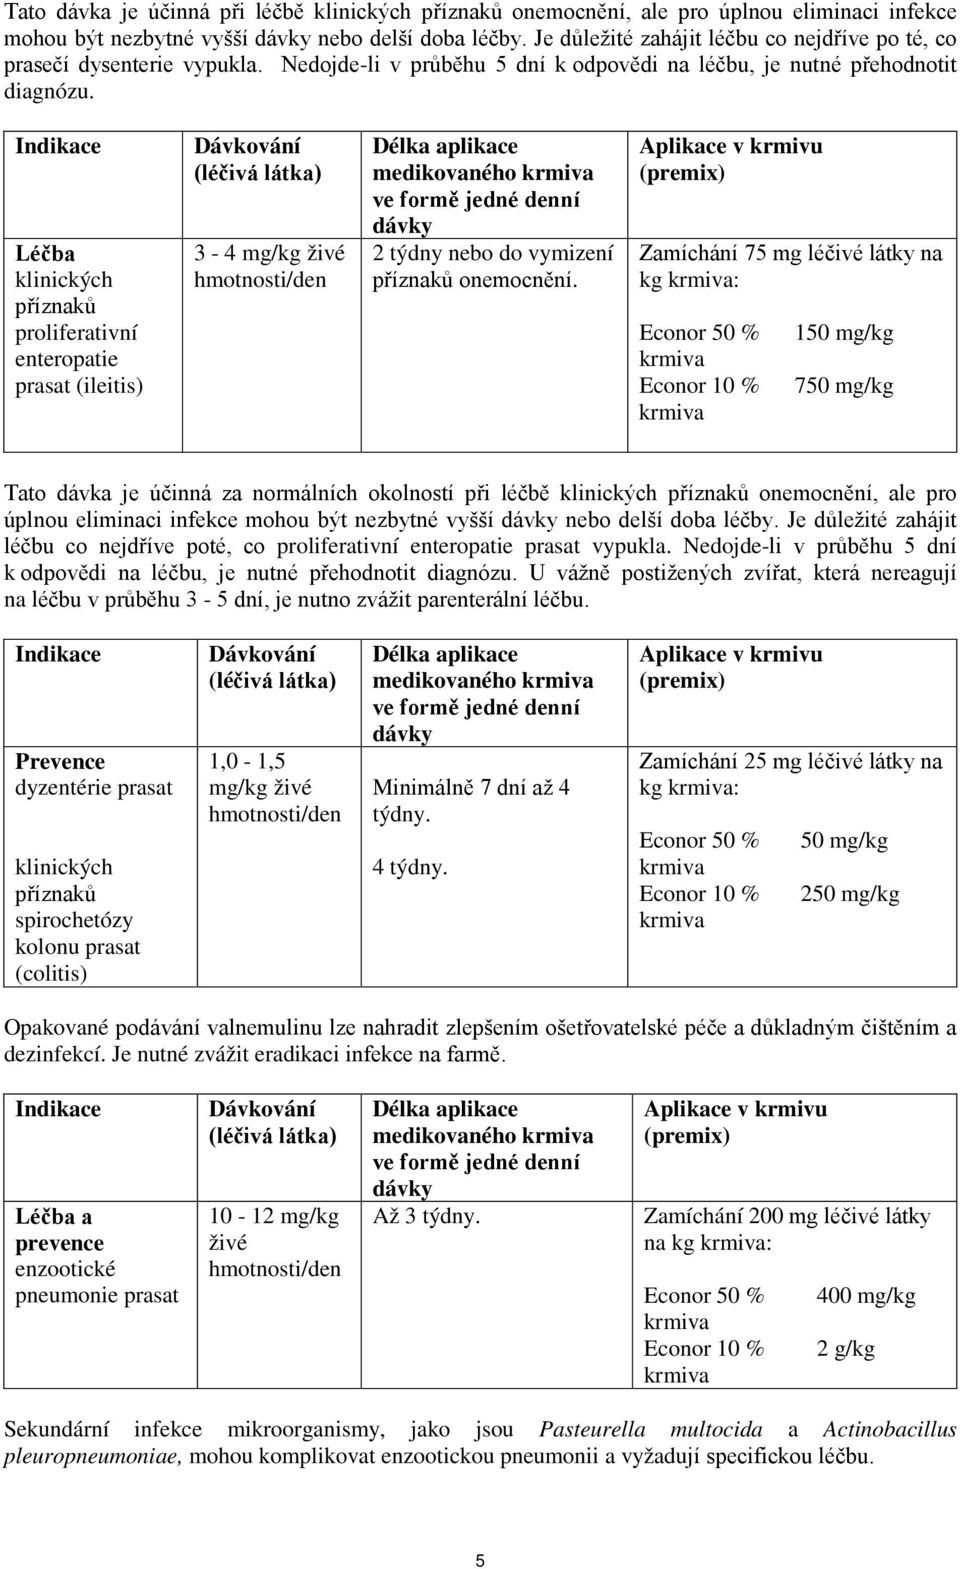 Indikace Léčba klinických příznaků proliferativní enteropatie prasat (ileitis) Dávkování (léčivá látka) 3-4 mg/kg živé hmotnosti/den Délka aplikace medikovaného krmiva ve formě jedné denní dávky 2